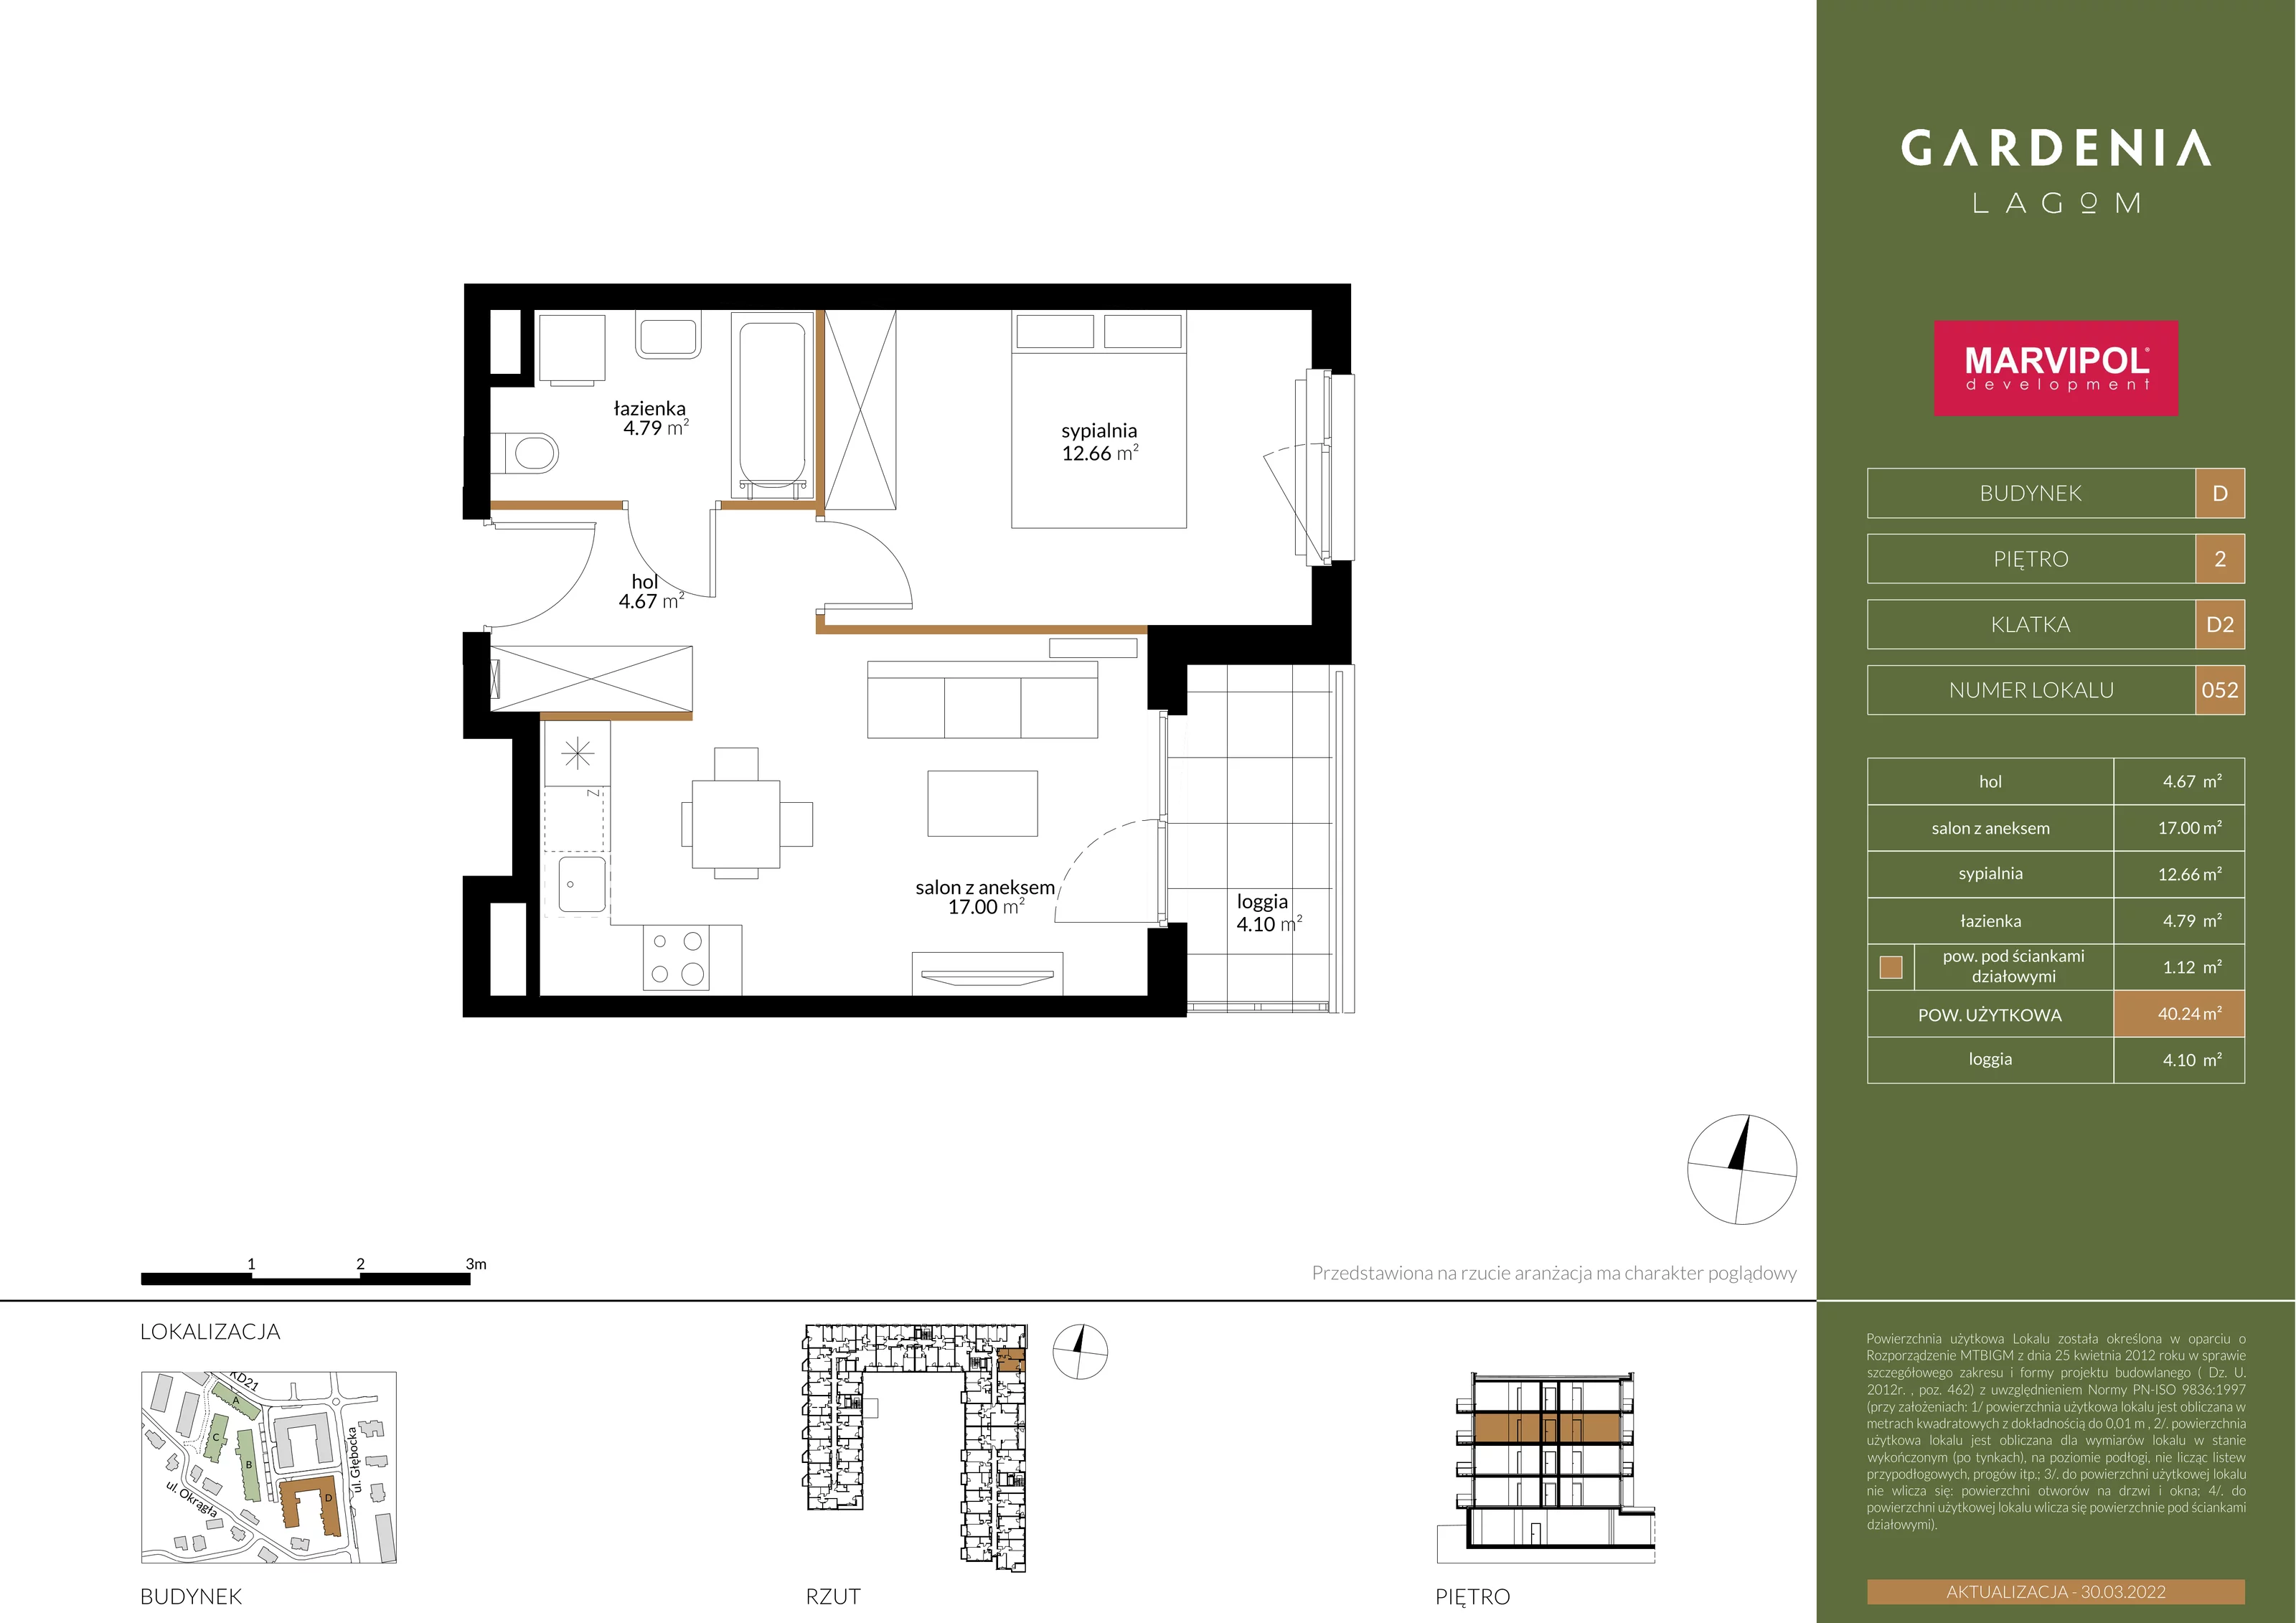 Apartament 40,24 m², piętro 2, oferta nr D052, Gardenia Lagom, Warszawa, Białołęka, Grodzisk, ul. Głębocka 117